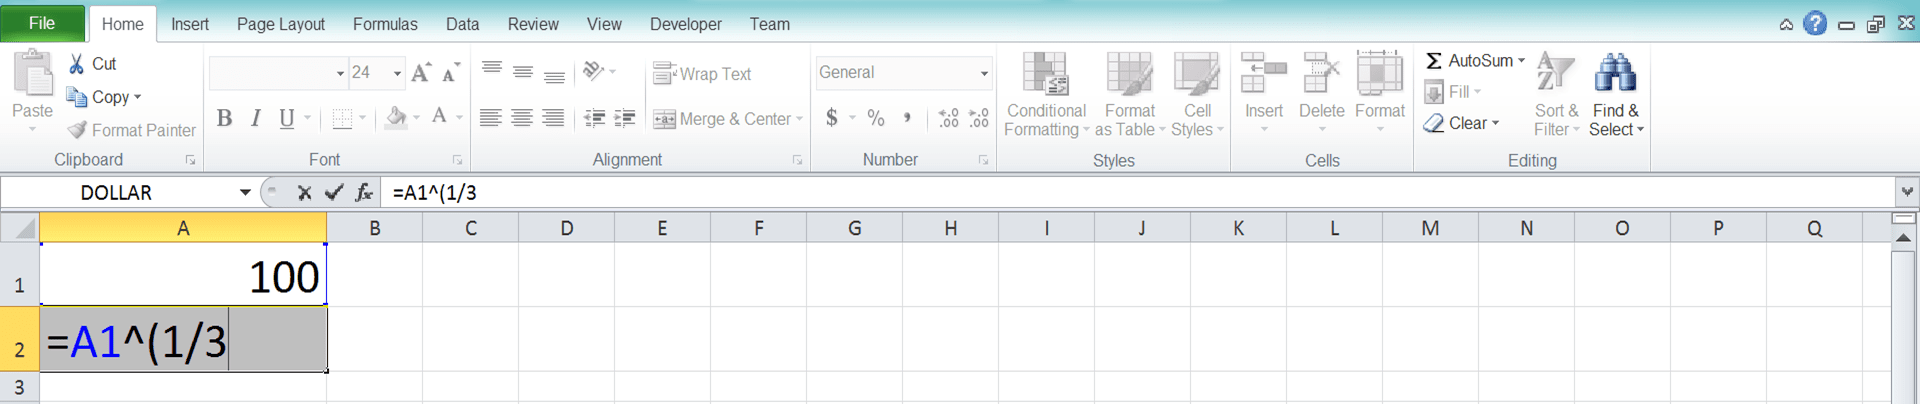 Cara Menghitung Akar di Excel Beserta Berbagai Rumus dan Fungsinya - Screenshot Langkah 1-4